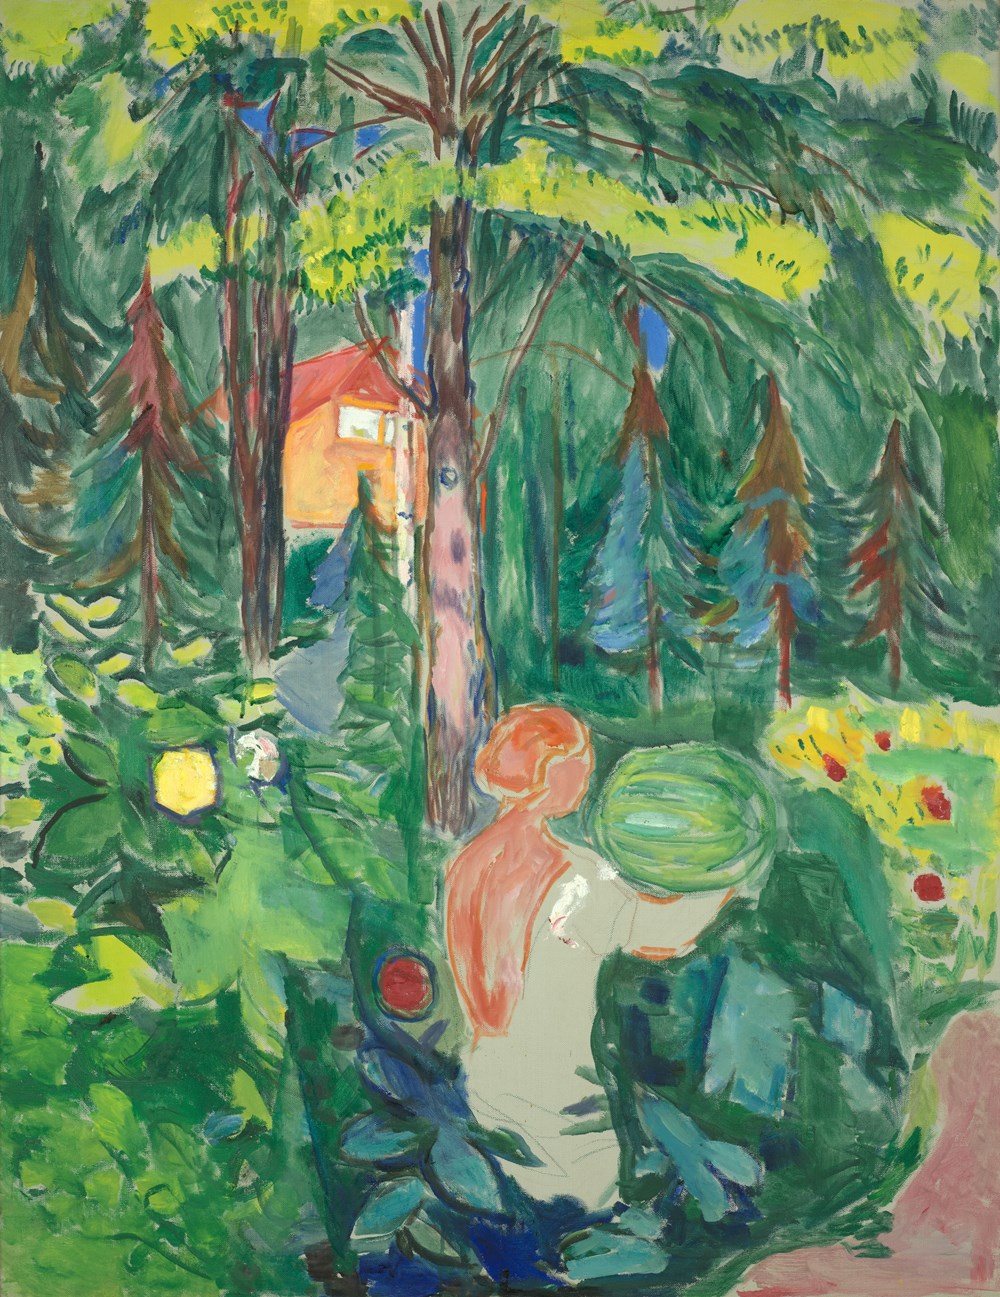 Maleri av en kvinne i skogen med et gresskar i hendene og et hus i bakgrunnen